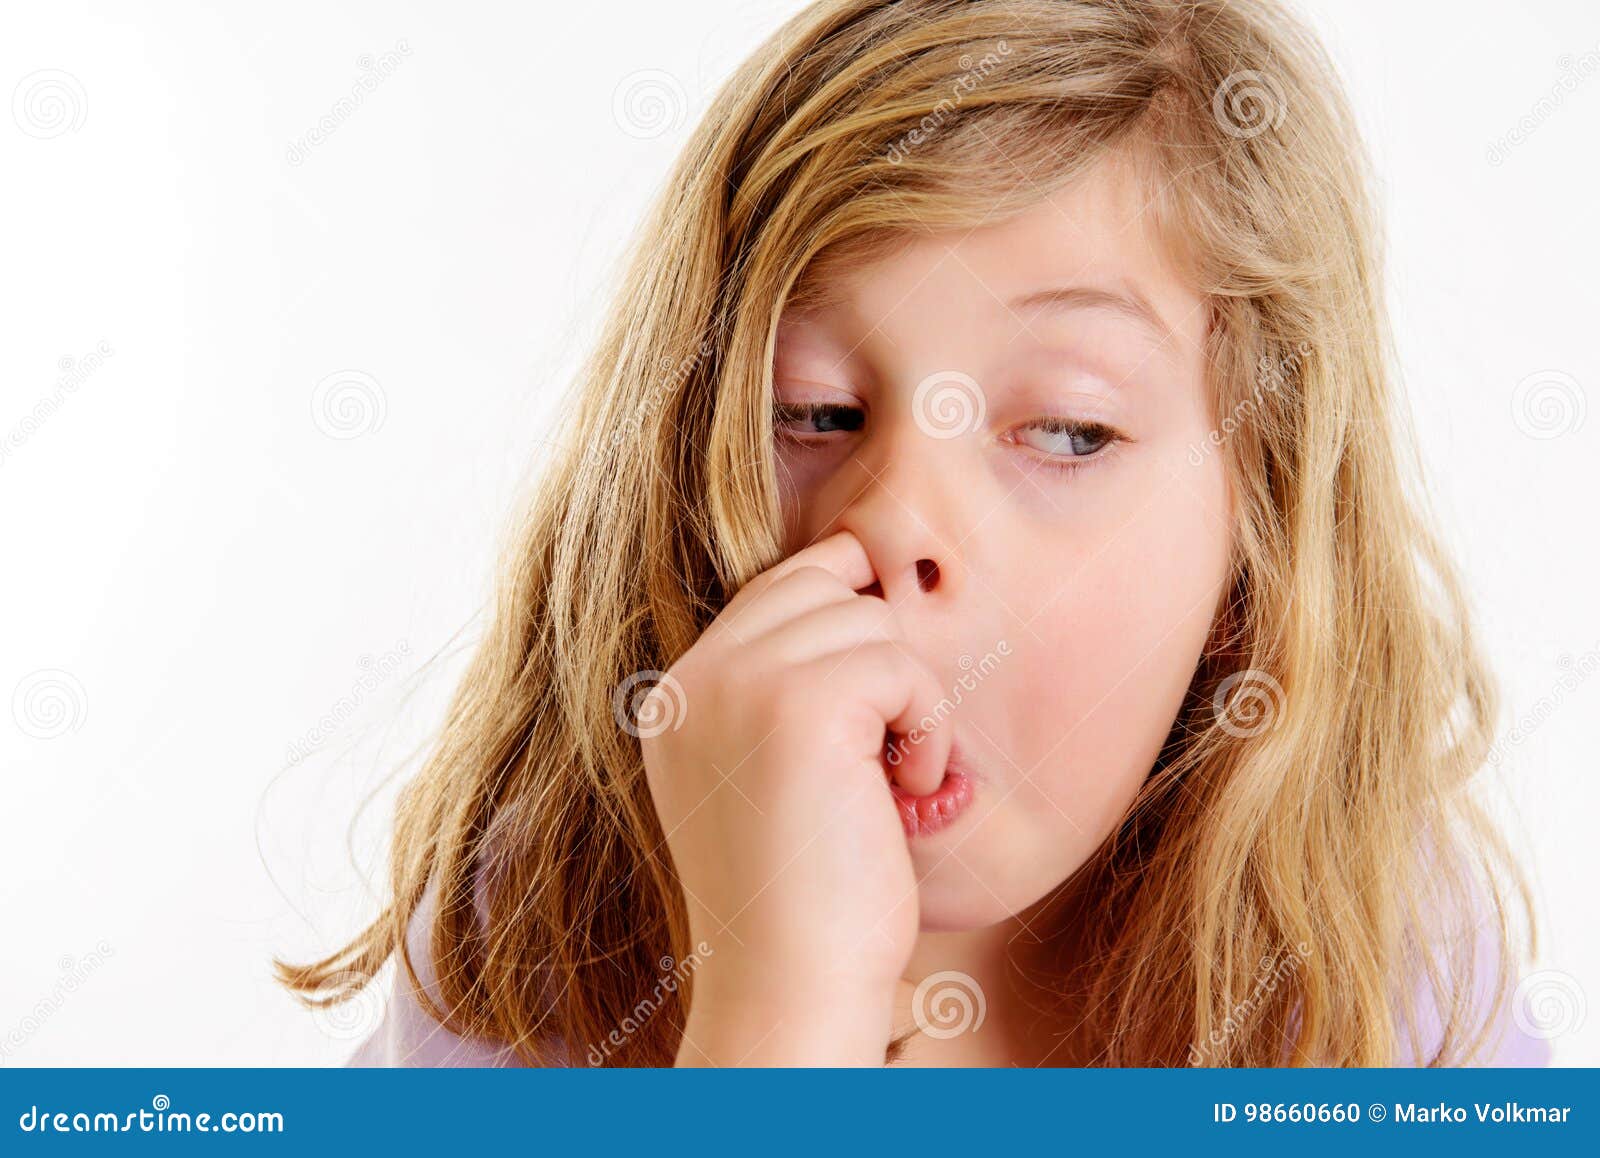 Girls Picking Nose